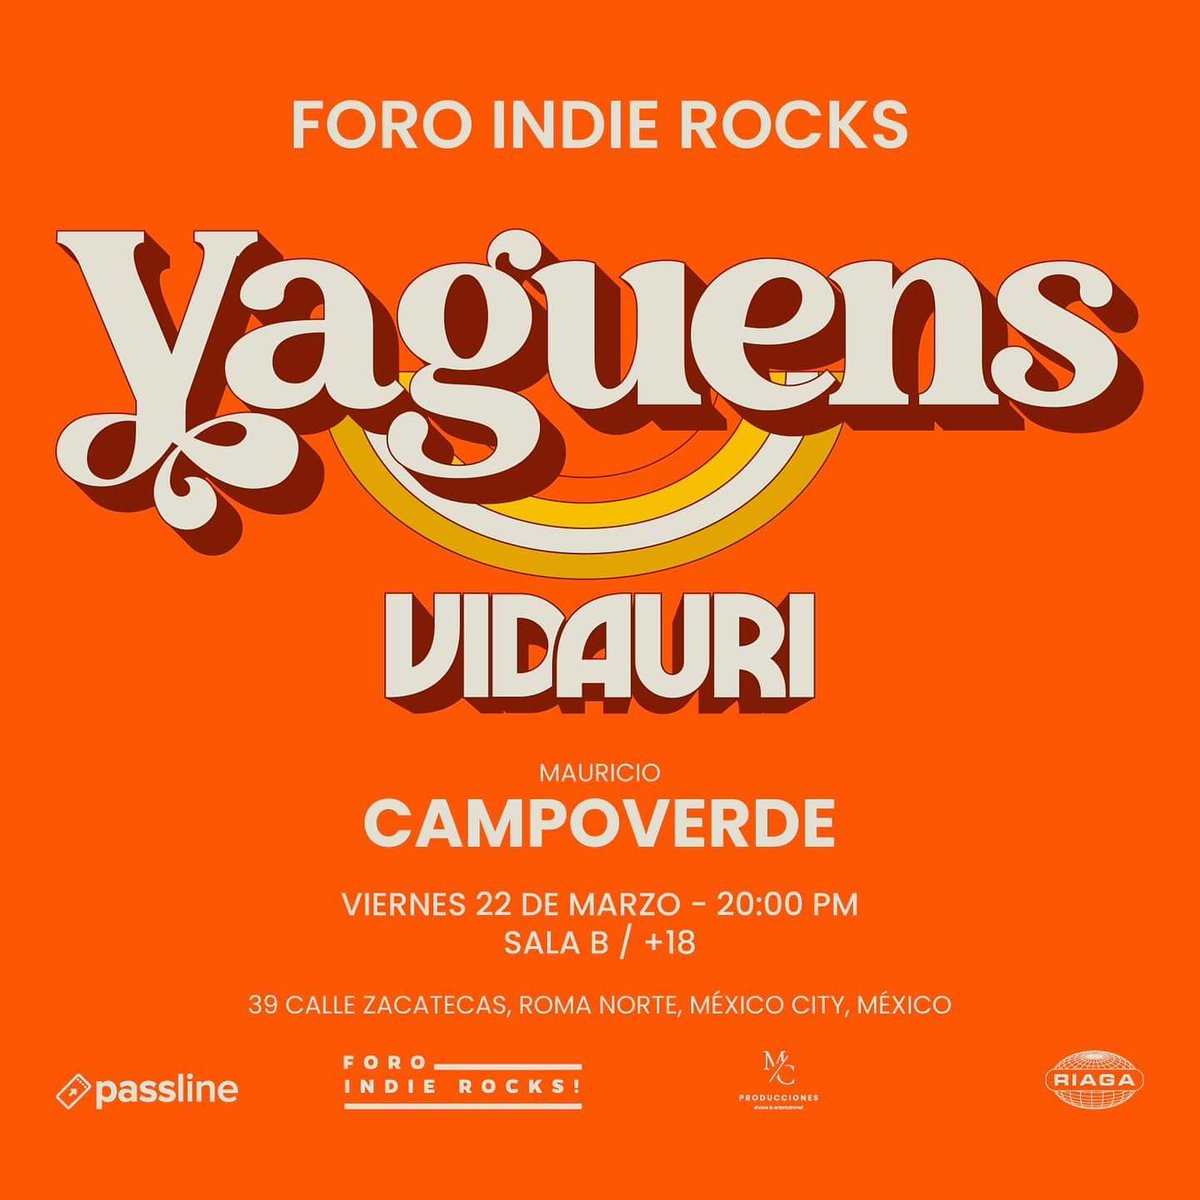 Lánzate a ver buenas bandas el 22 de marzo al @ForoIndierocks ✌ Disfruta de @LosVaguens, @vidaurimx y @Mauriciocampoverde 👌